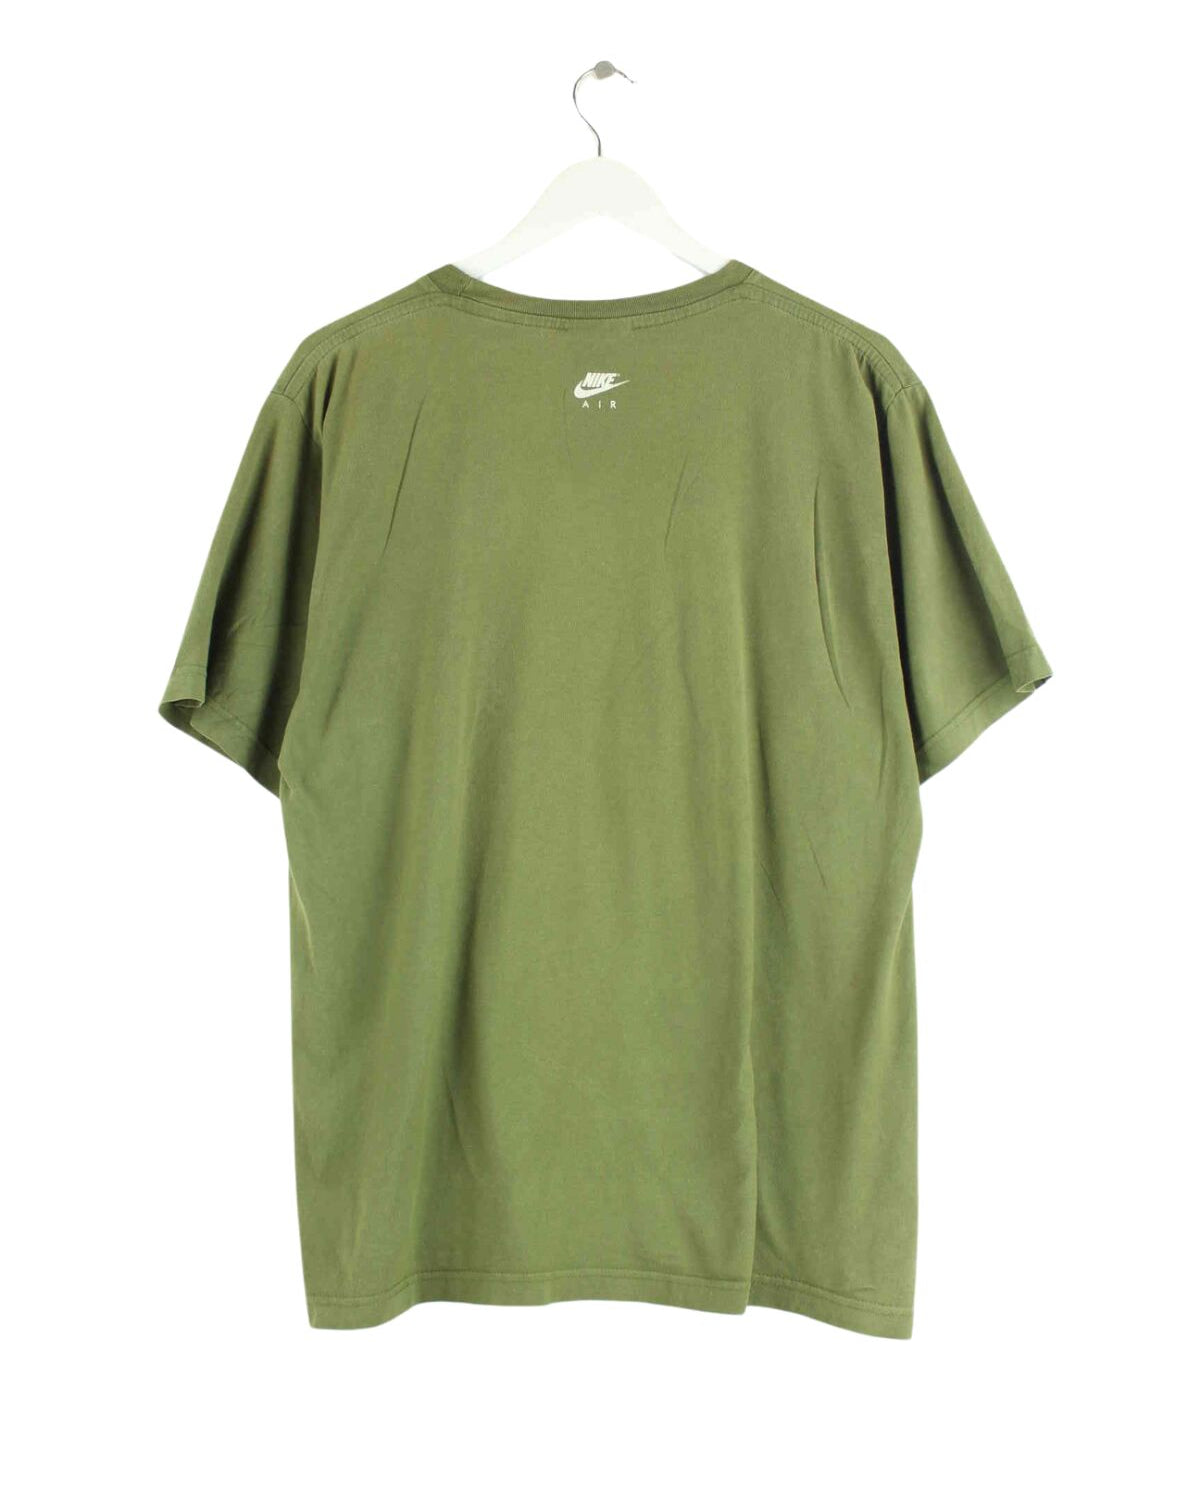 Nike Air Print T-Shirt Khaki M (back image)